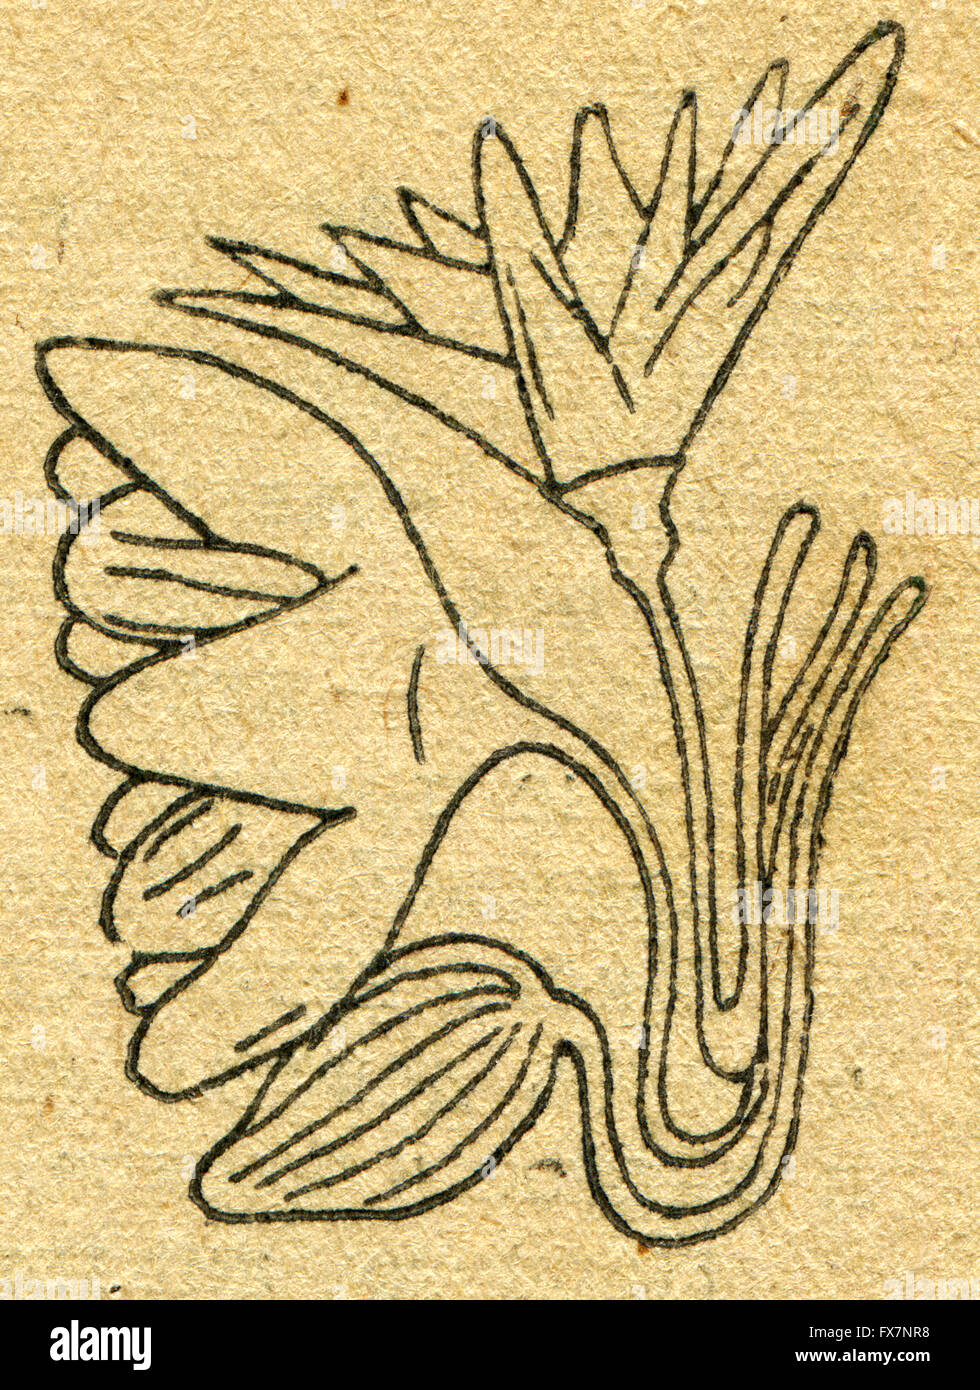 Image d'une fleur de lotus dans la tombe égyptienne - une illustration de l'album "Dans le sillage de Robinson Crusoé', Moscou, URSS, 1946. Artiste Petr Pastukhov Banque D'Images